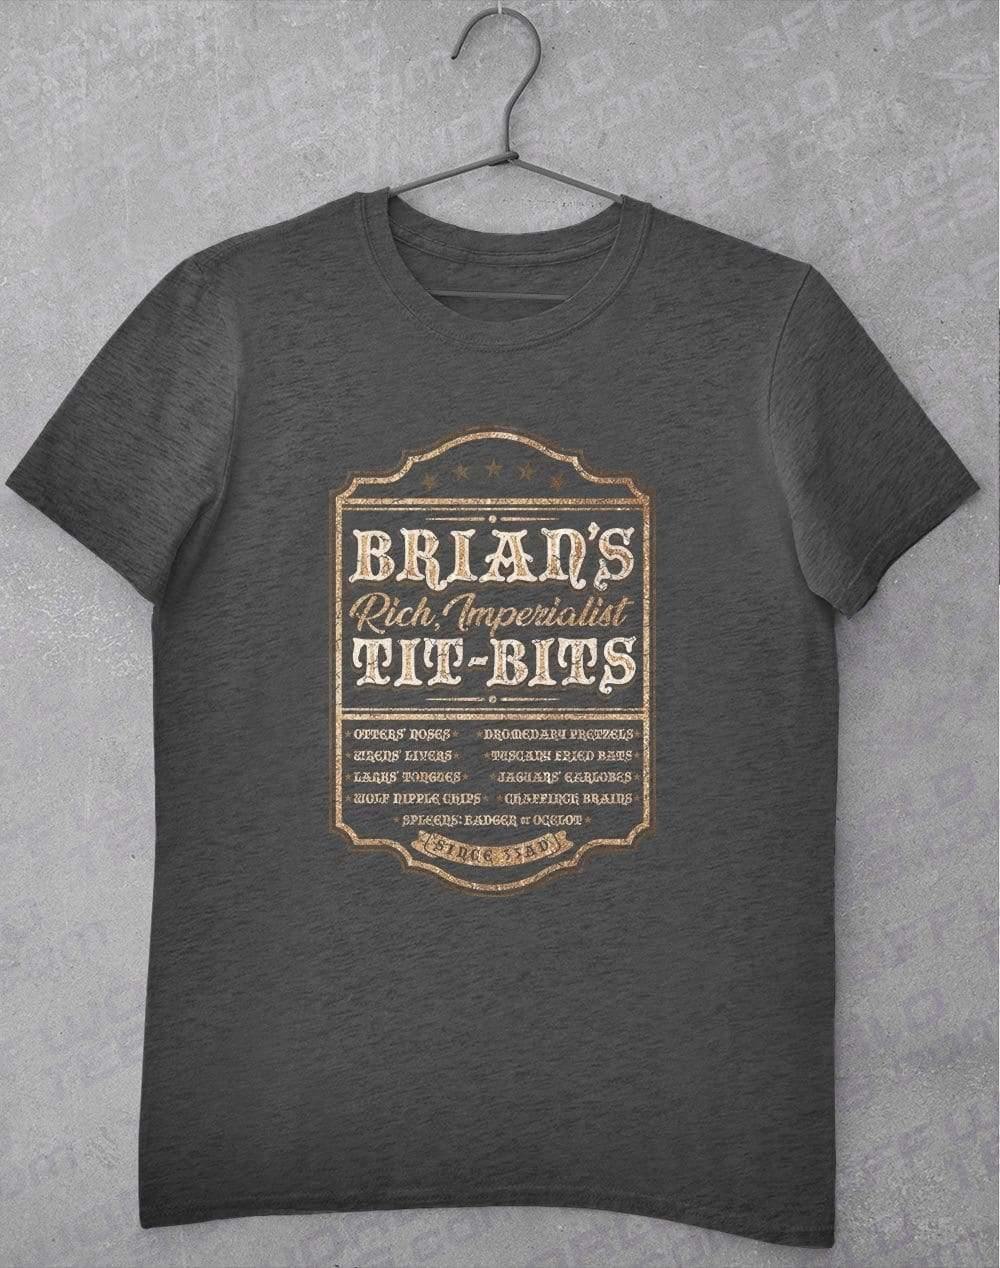 Brian's Tit-Bits T-Shirt S / Dark Heather  - Off World Tees